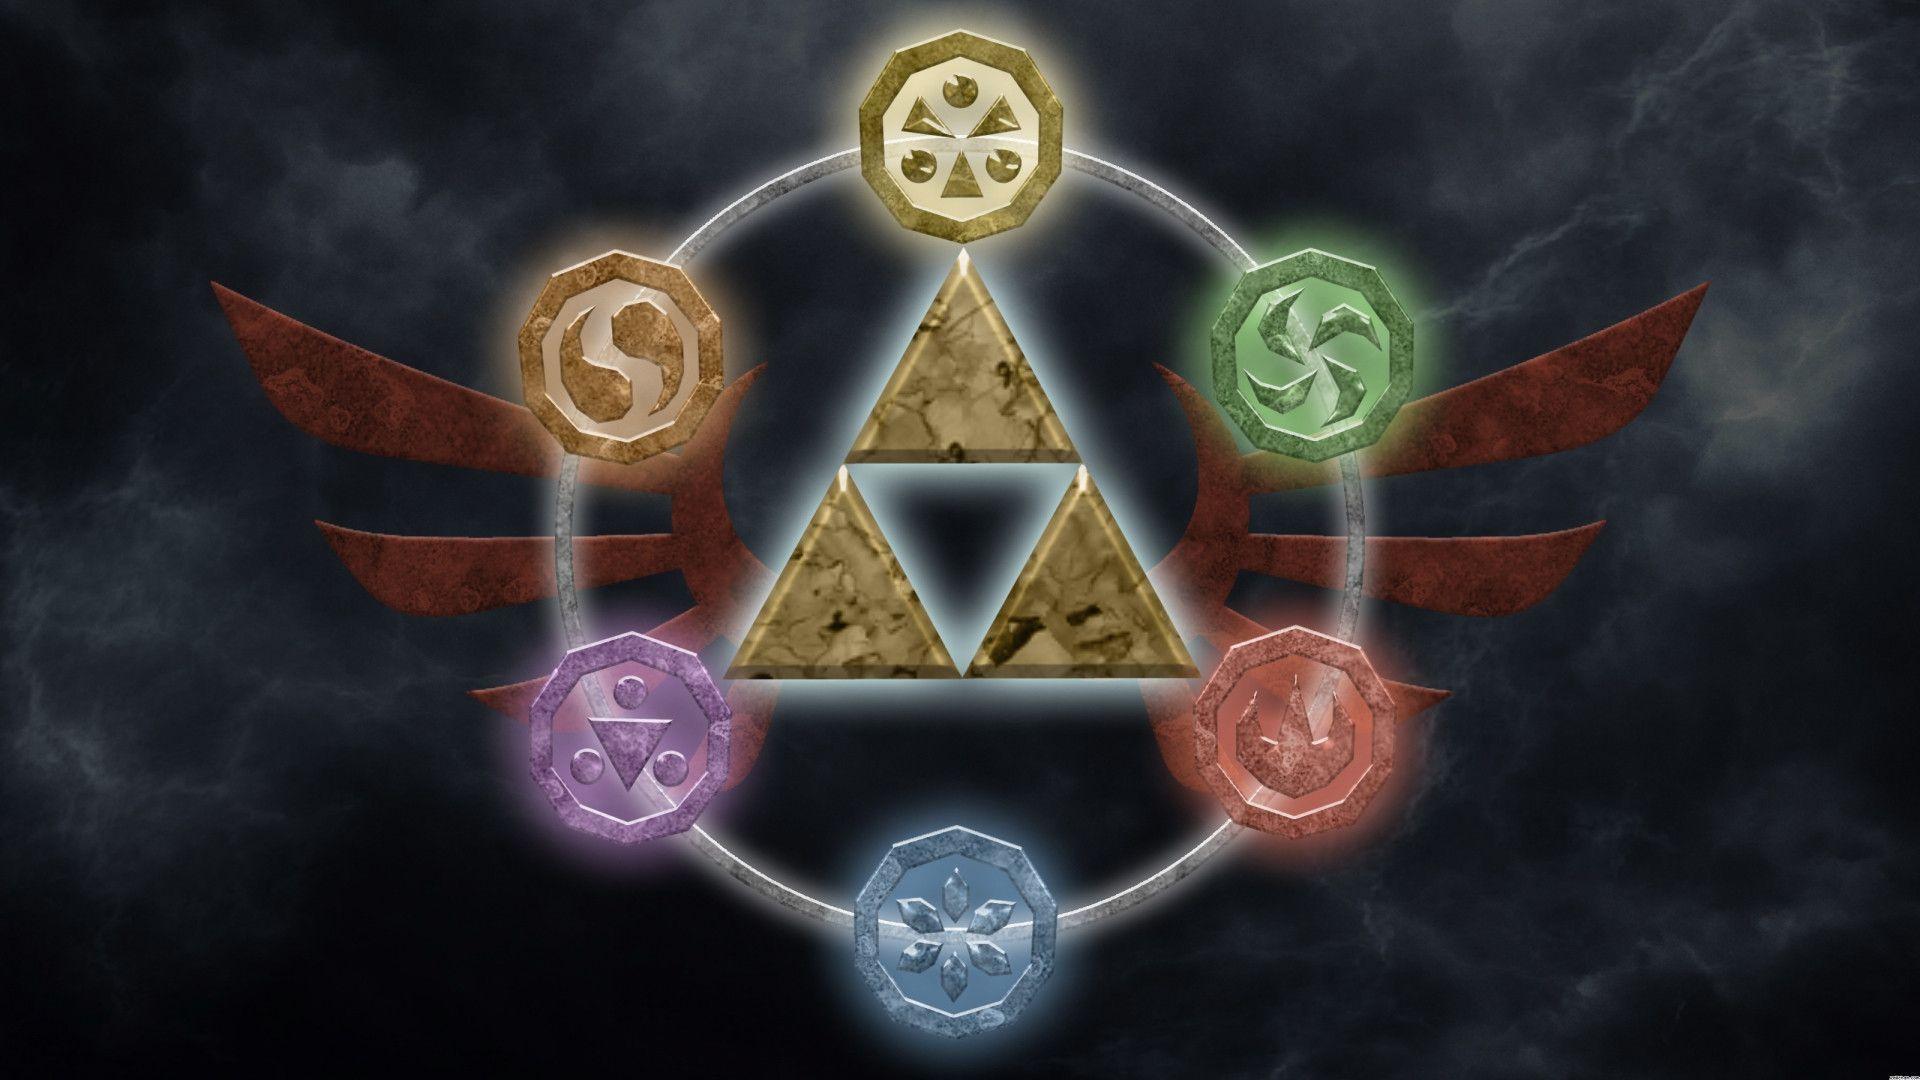 The Legend Of Zelda Wallpaper. The Legend Of Zelda Background